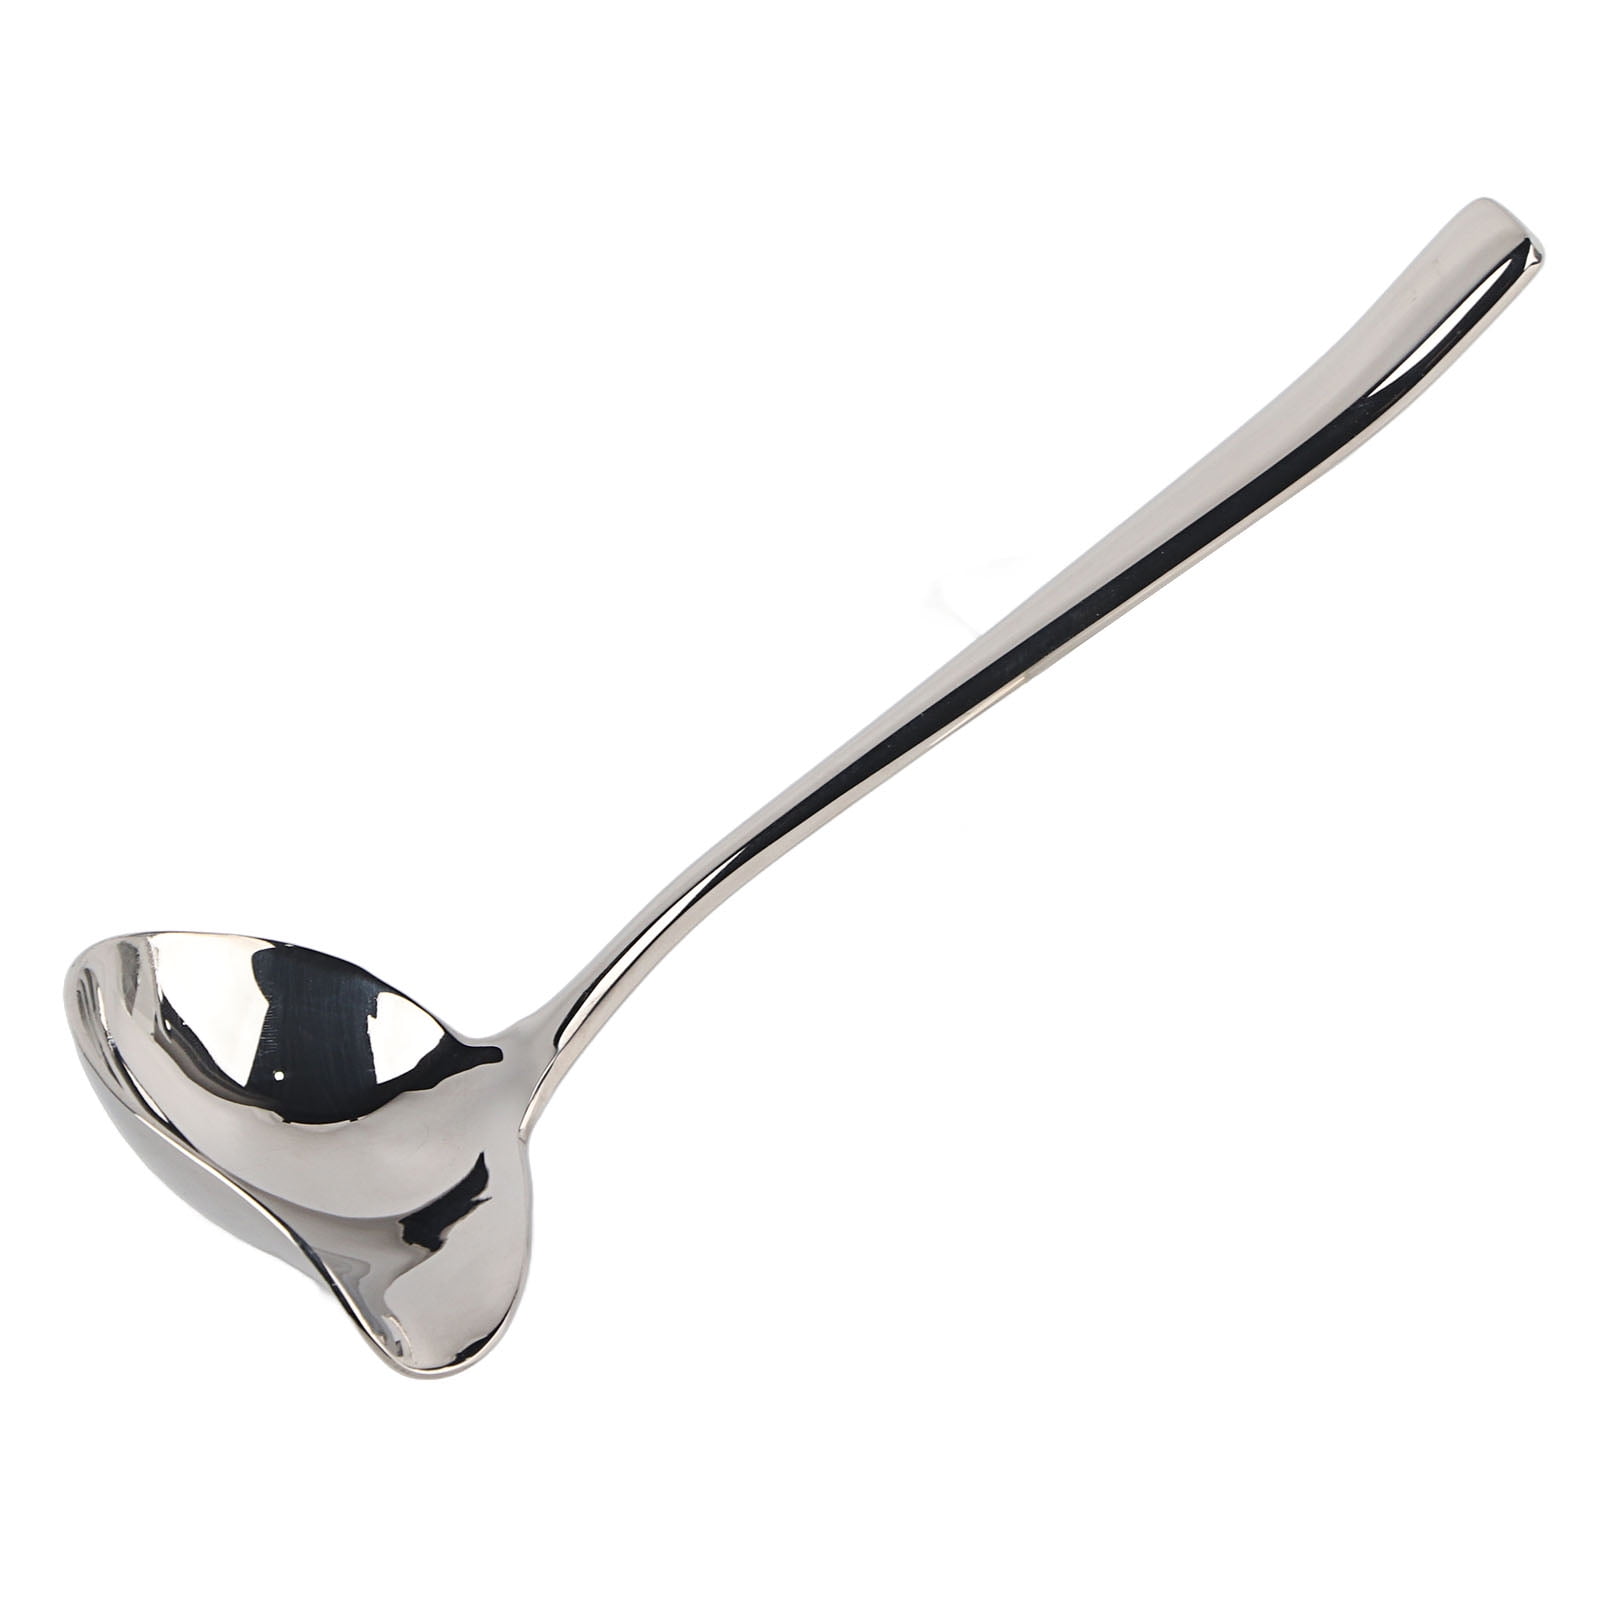 TIFENNY Elegant Swan Long Handled Spoon Soup Porridge Scoop Tableware Dinnerware Flatware Cooking Kitchen Tool Accessories Black 